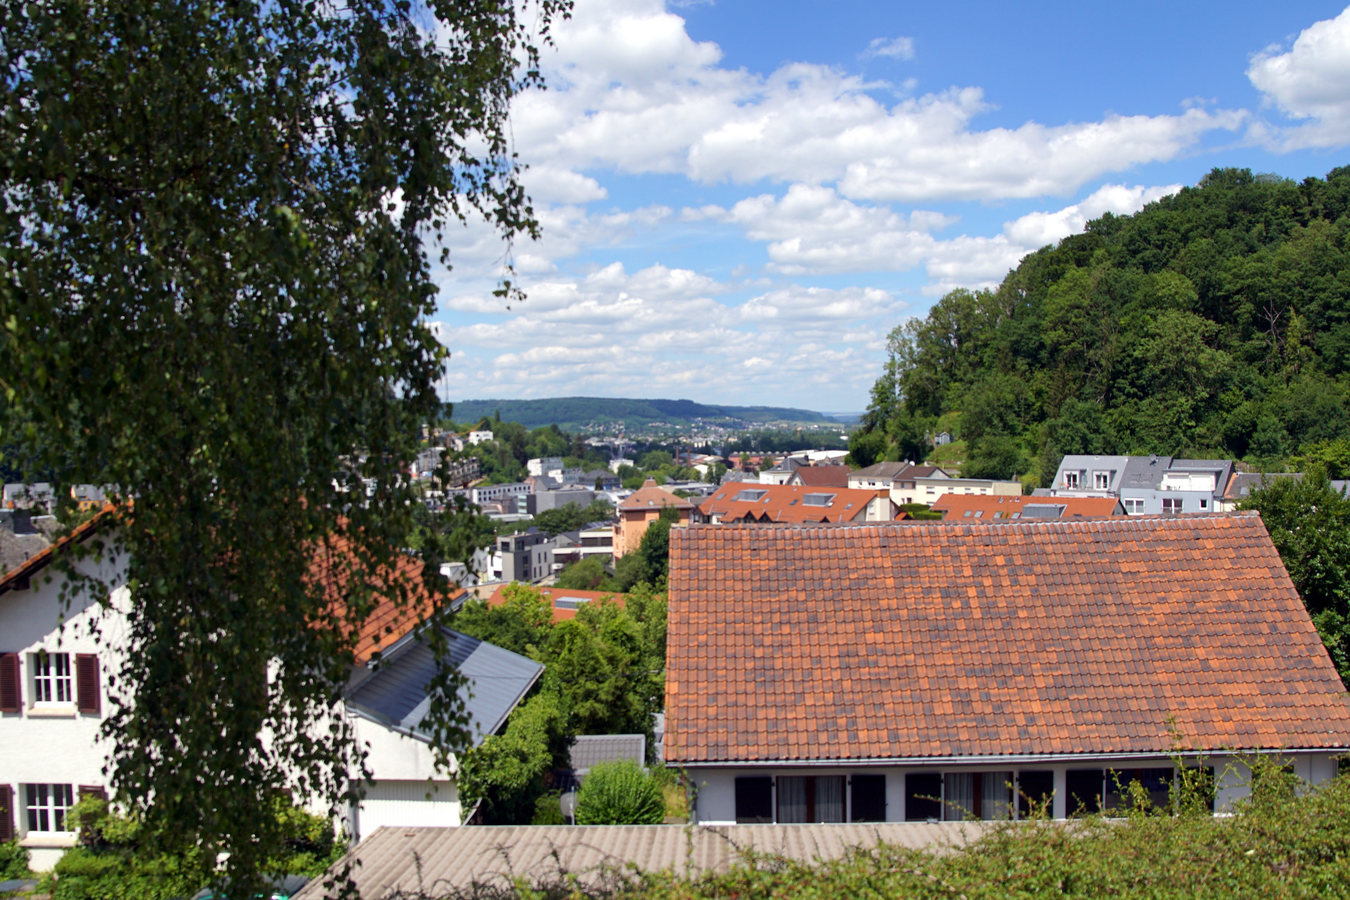 Weimerskirch district